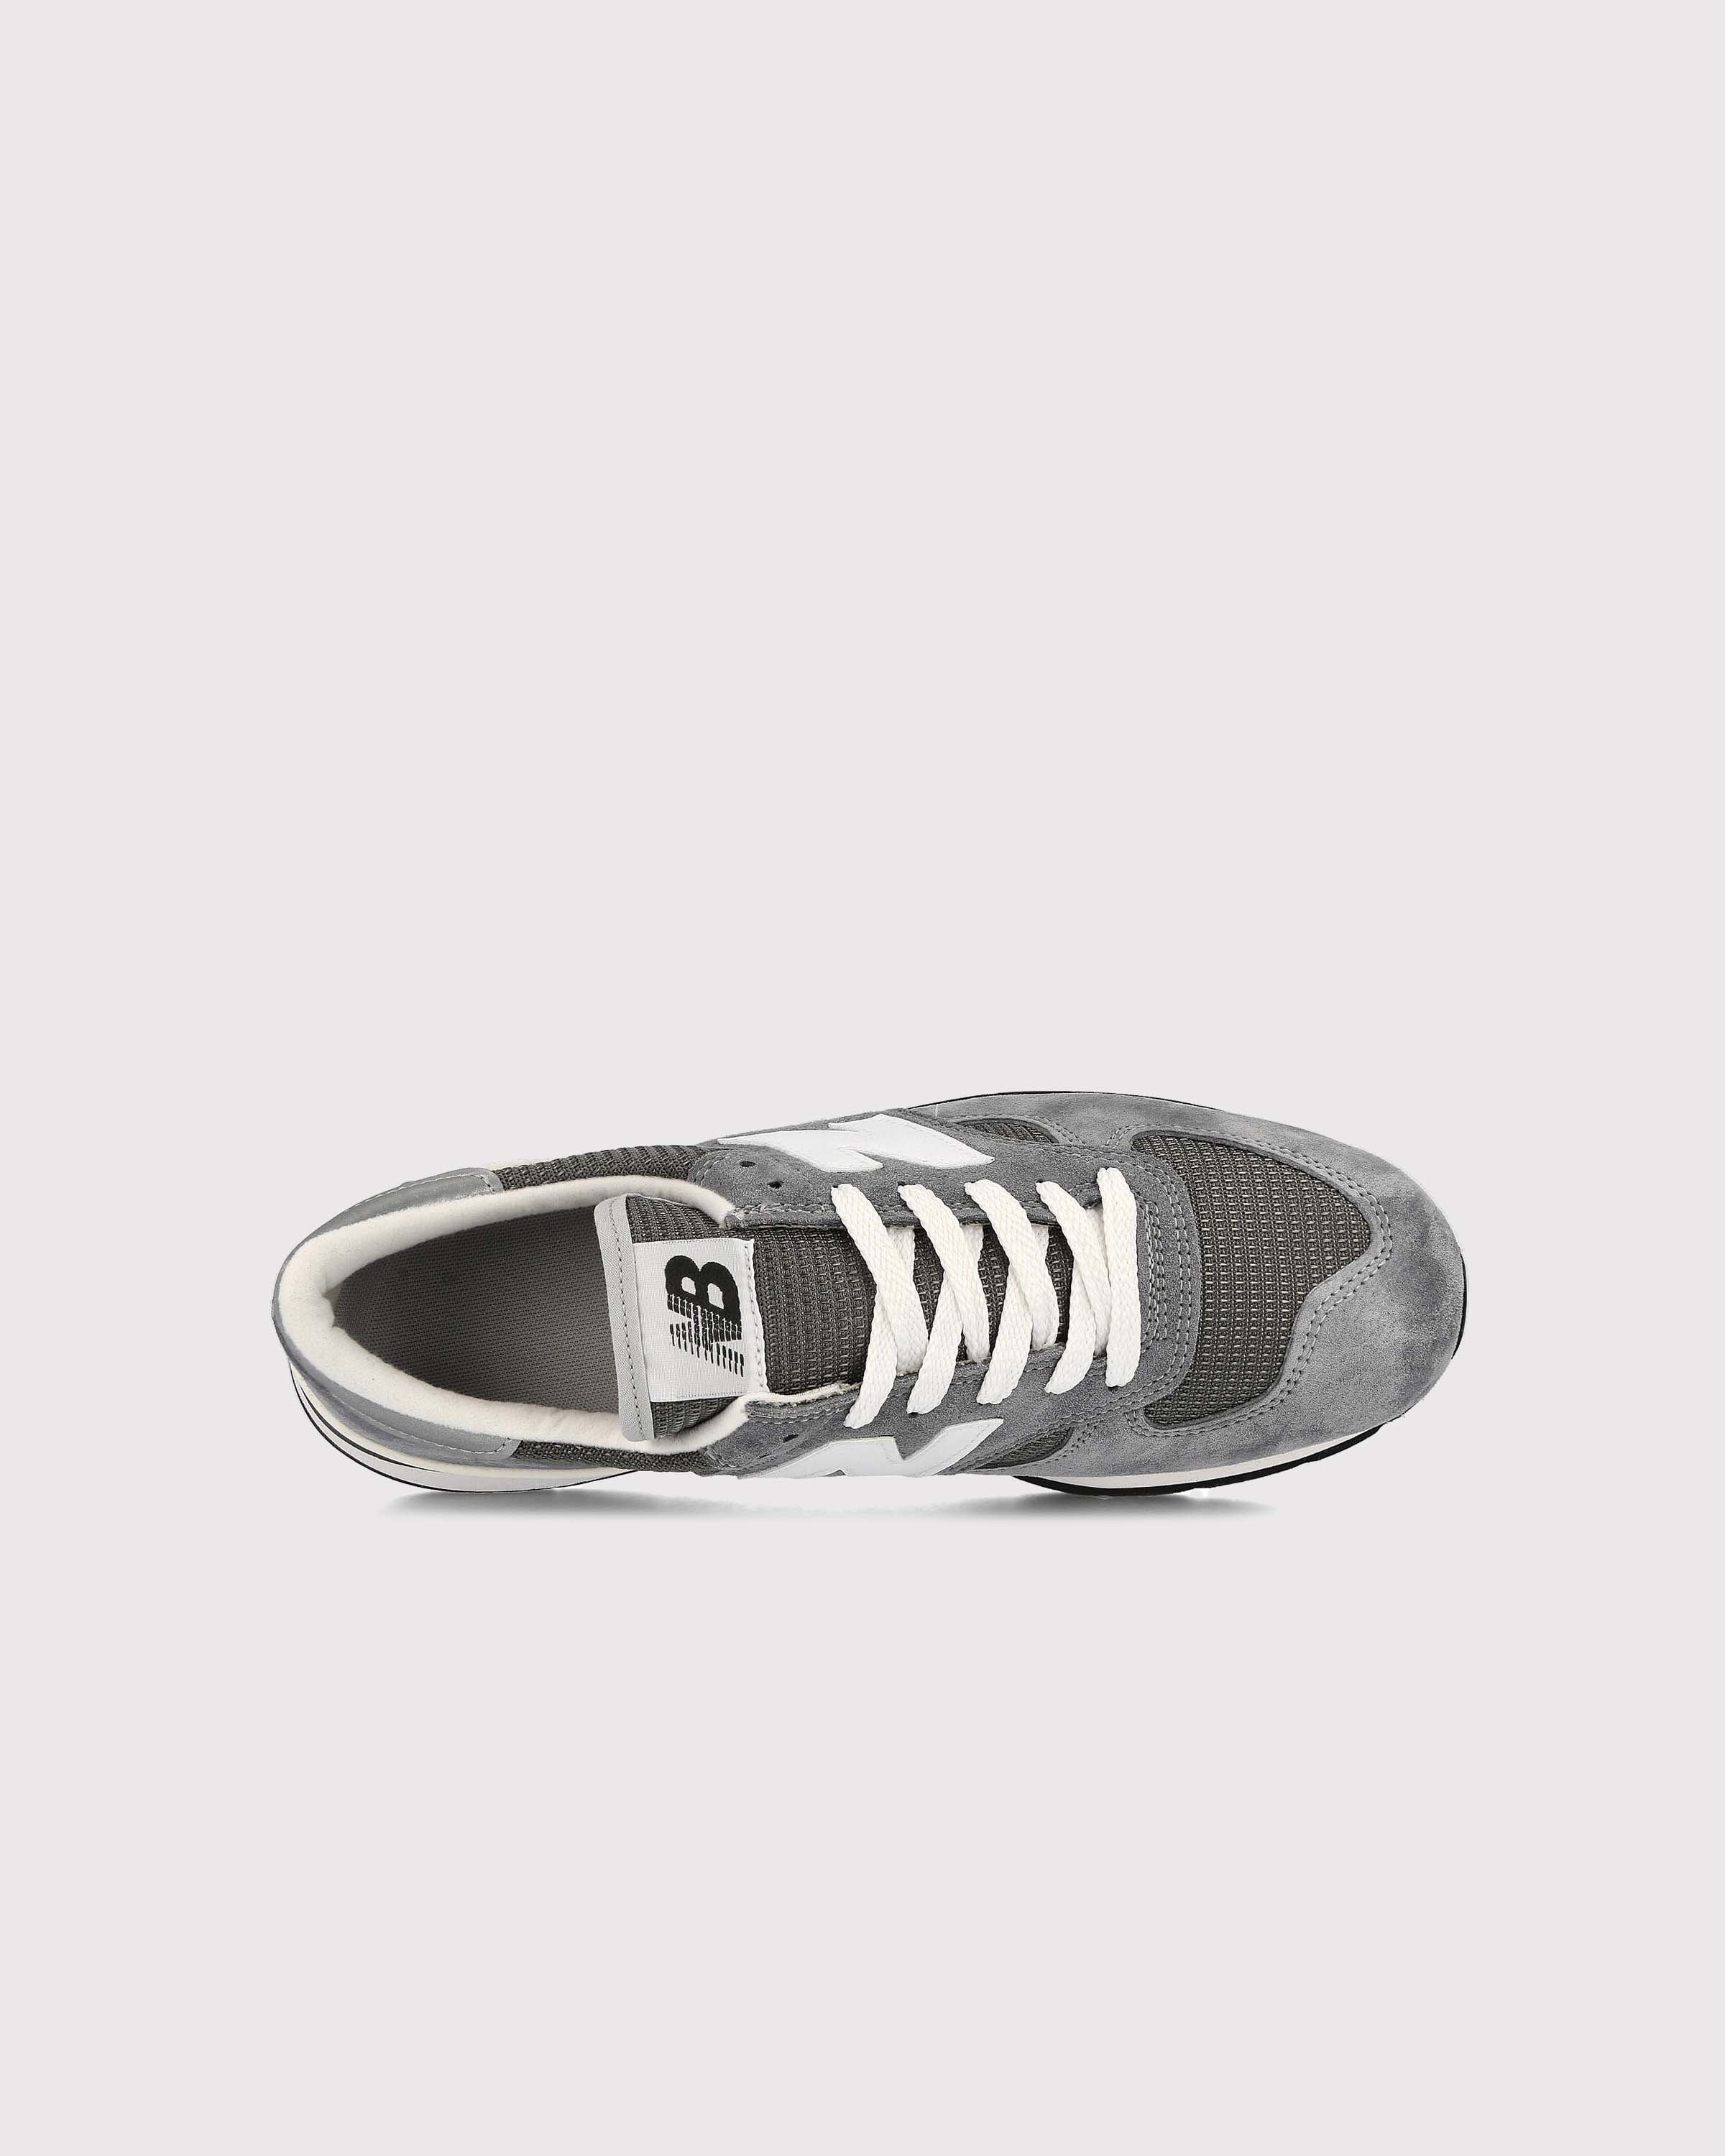 New Balance - M990GR1 Grey - Footwear - Grey - Image 3